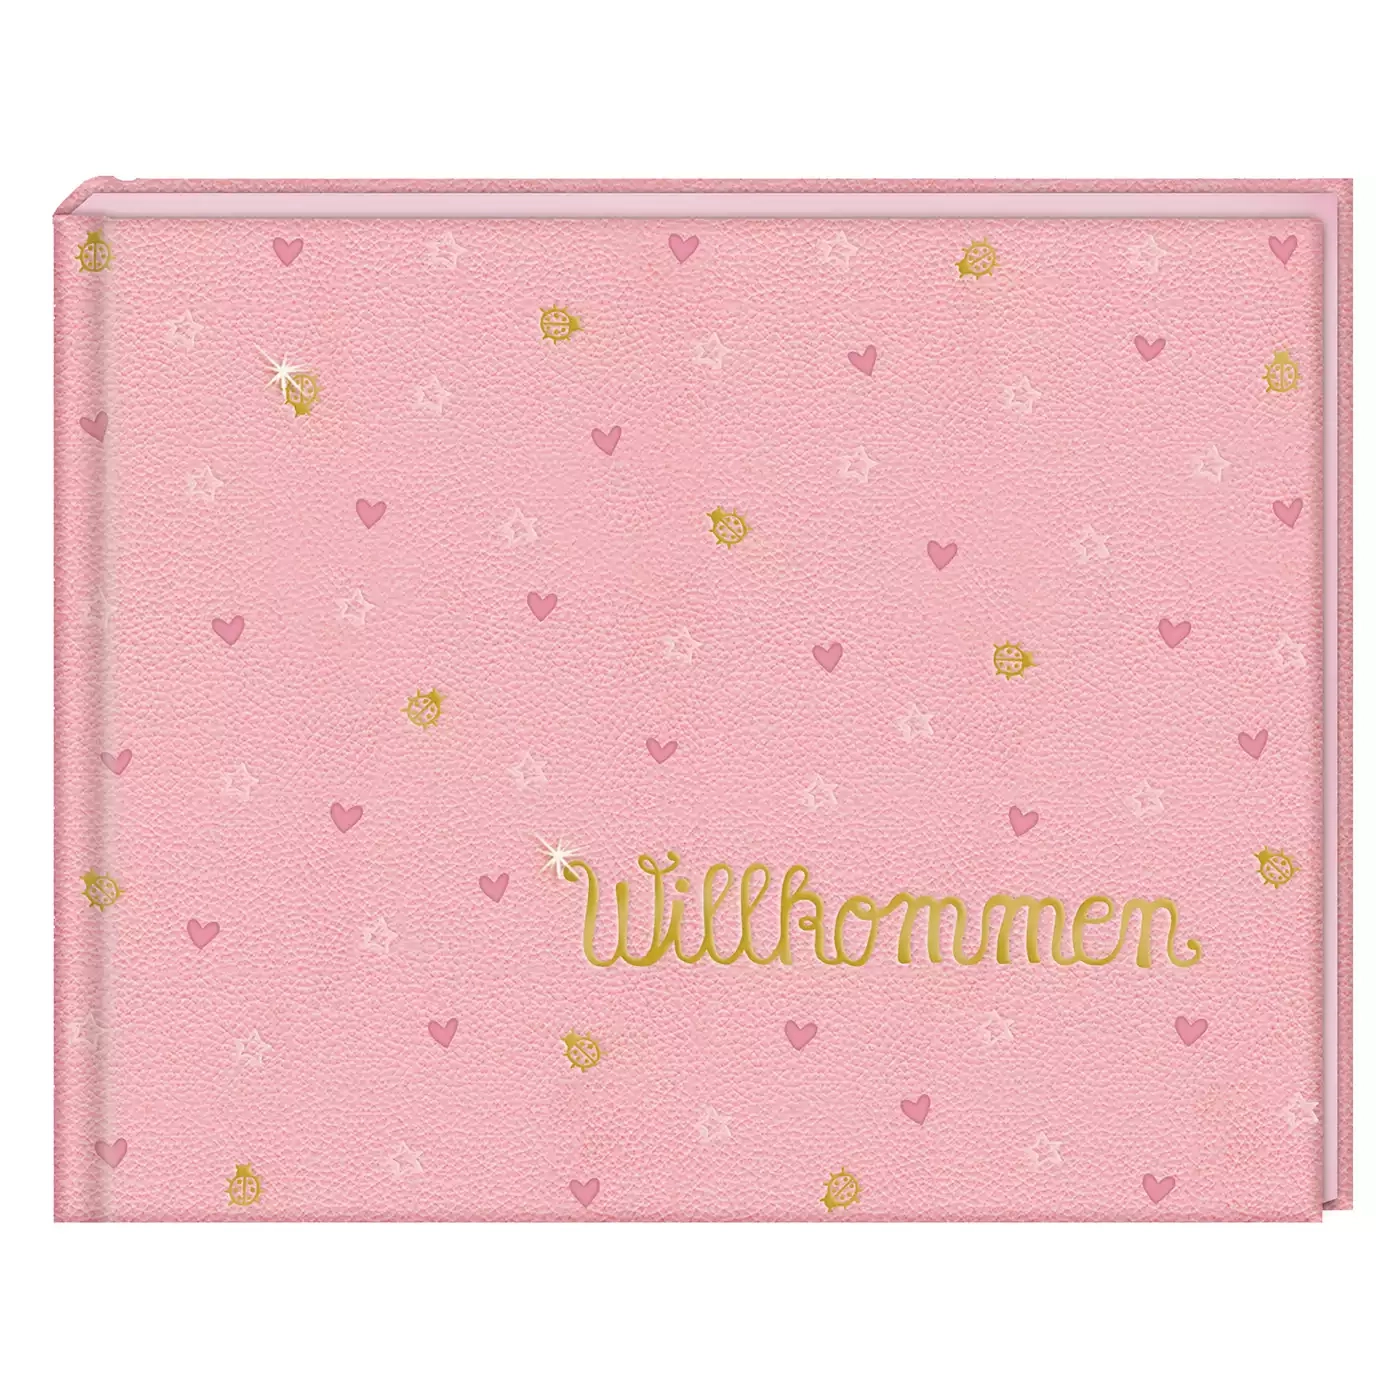 Babyalbum Willkommen BabyGlück DIE SPIEGELBURG Pink Rosa 2000576399902 1